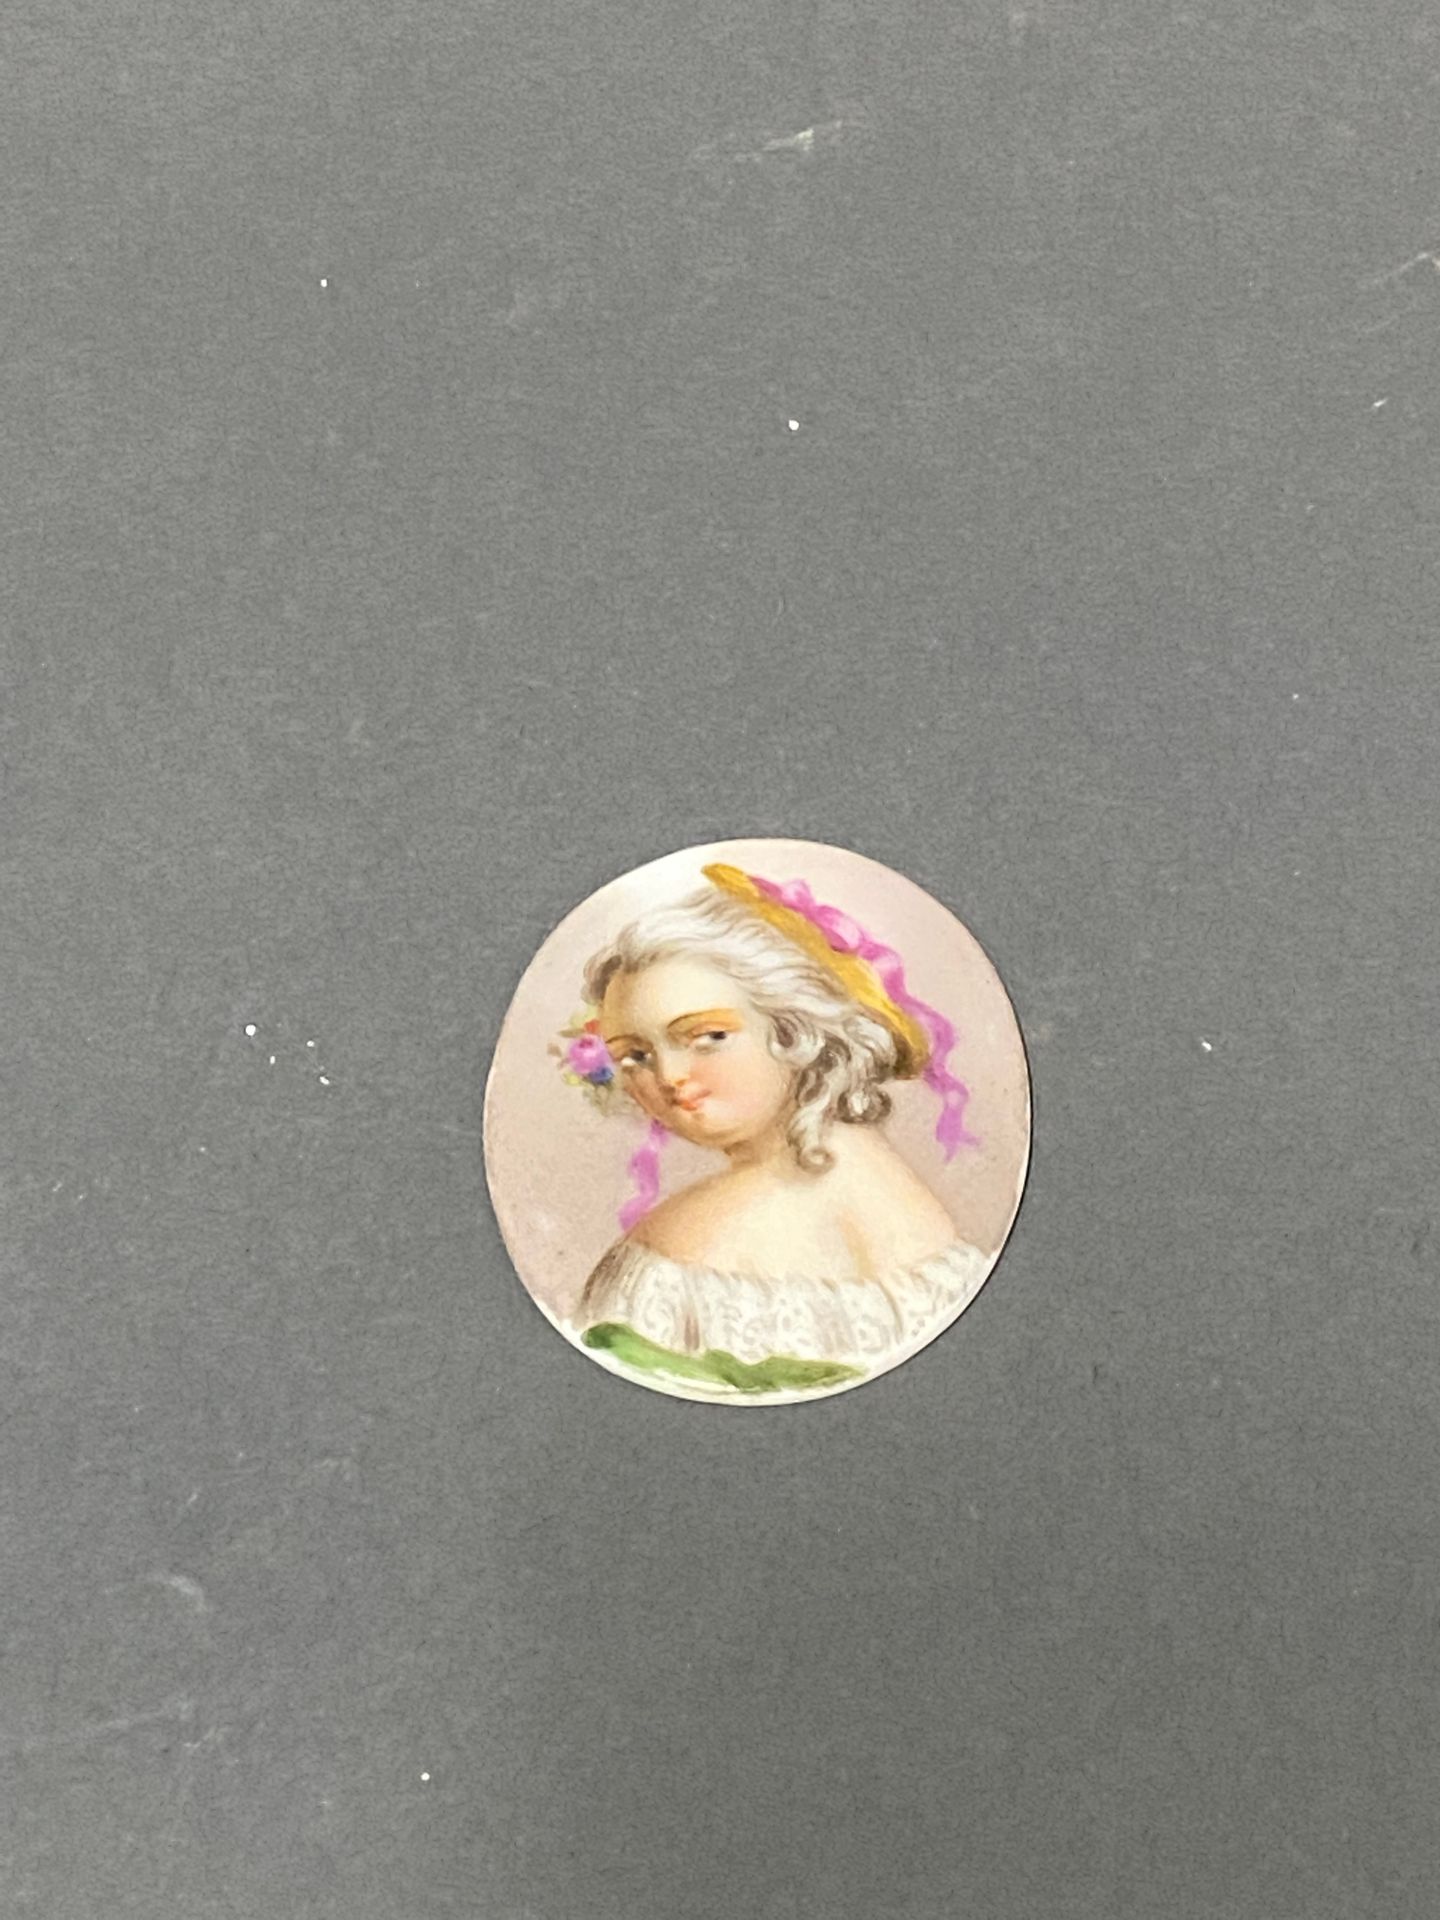 Null "Ritratto di un bambino

Miniatura su piatto di porcellana 

4,3 x 3,4 cm